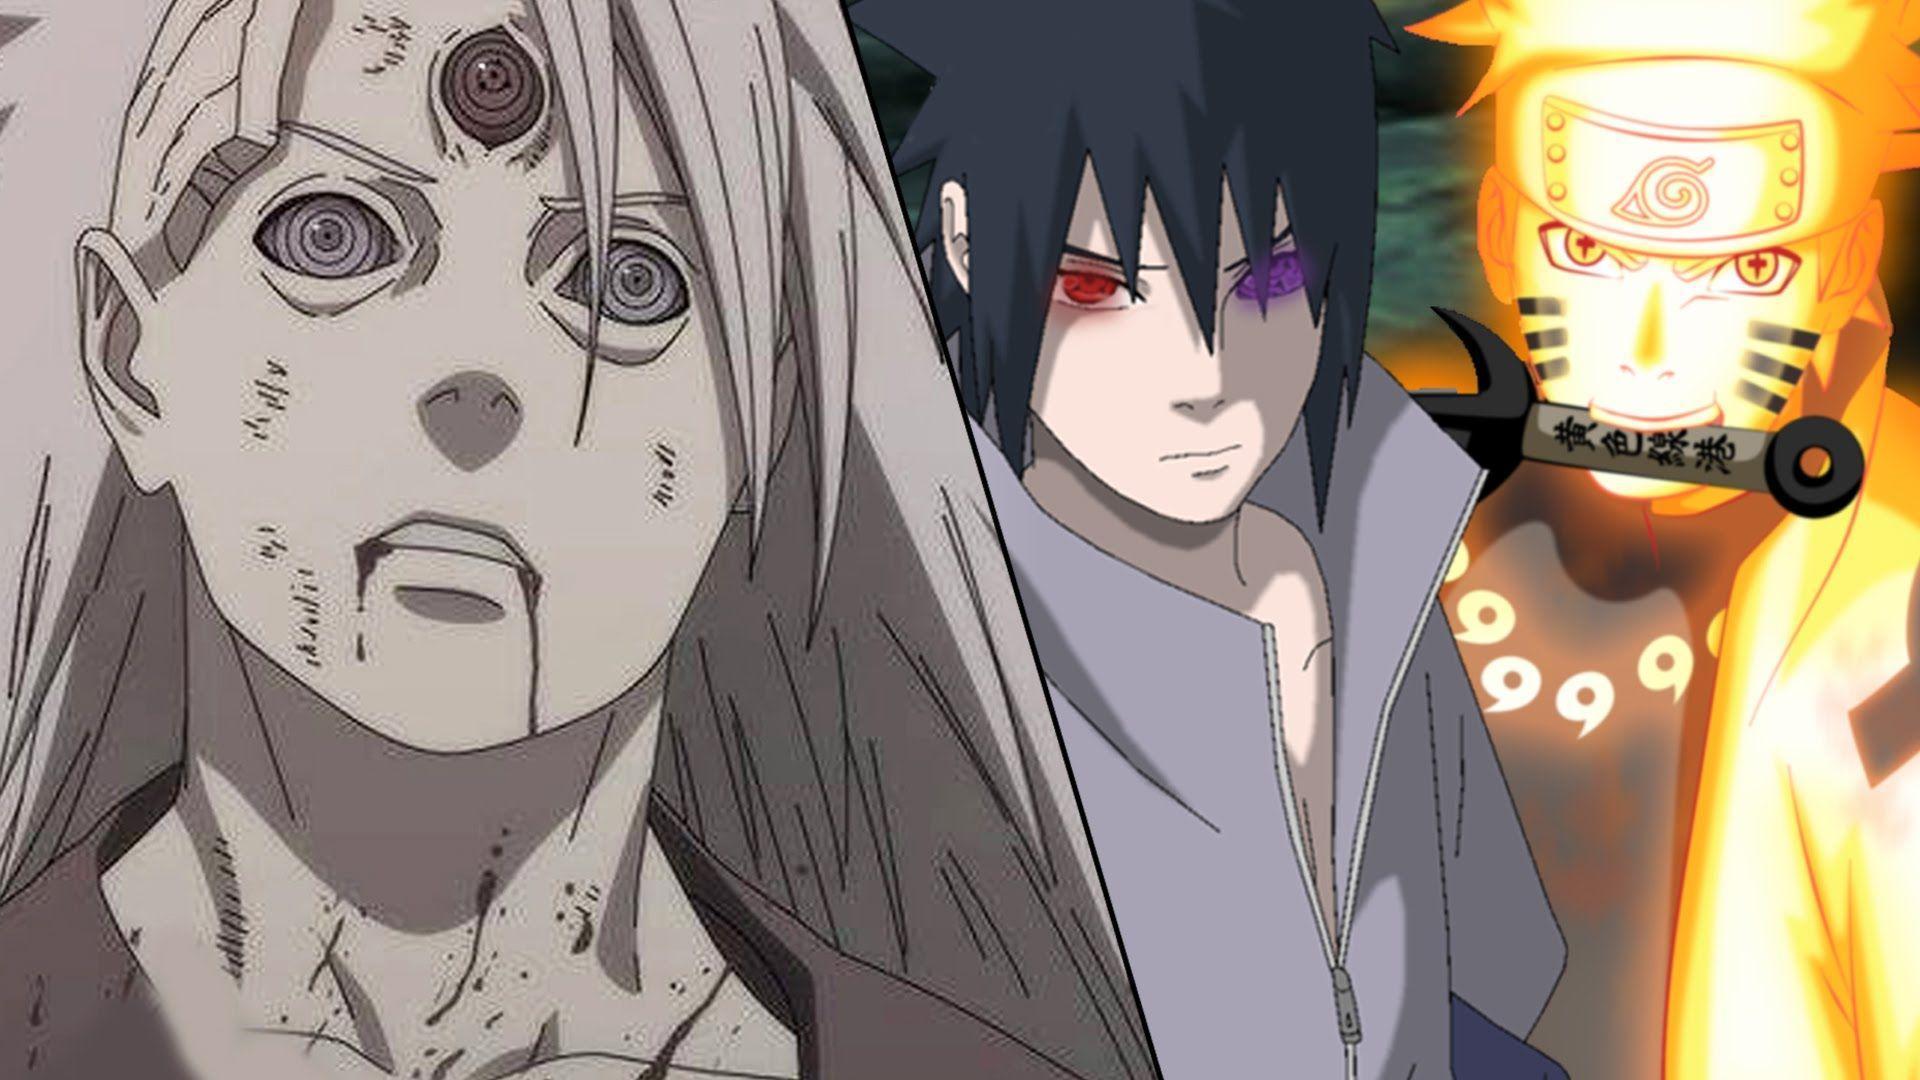 Naruto & Sasuke Vs Madara Uchiha - Naruto 12 Days of Anime Day